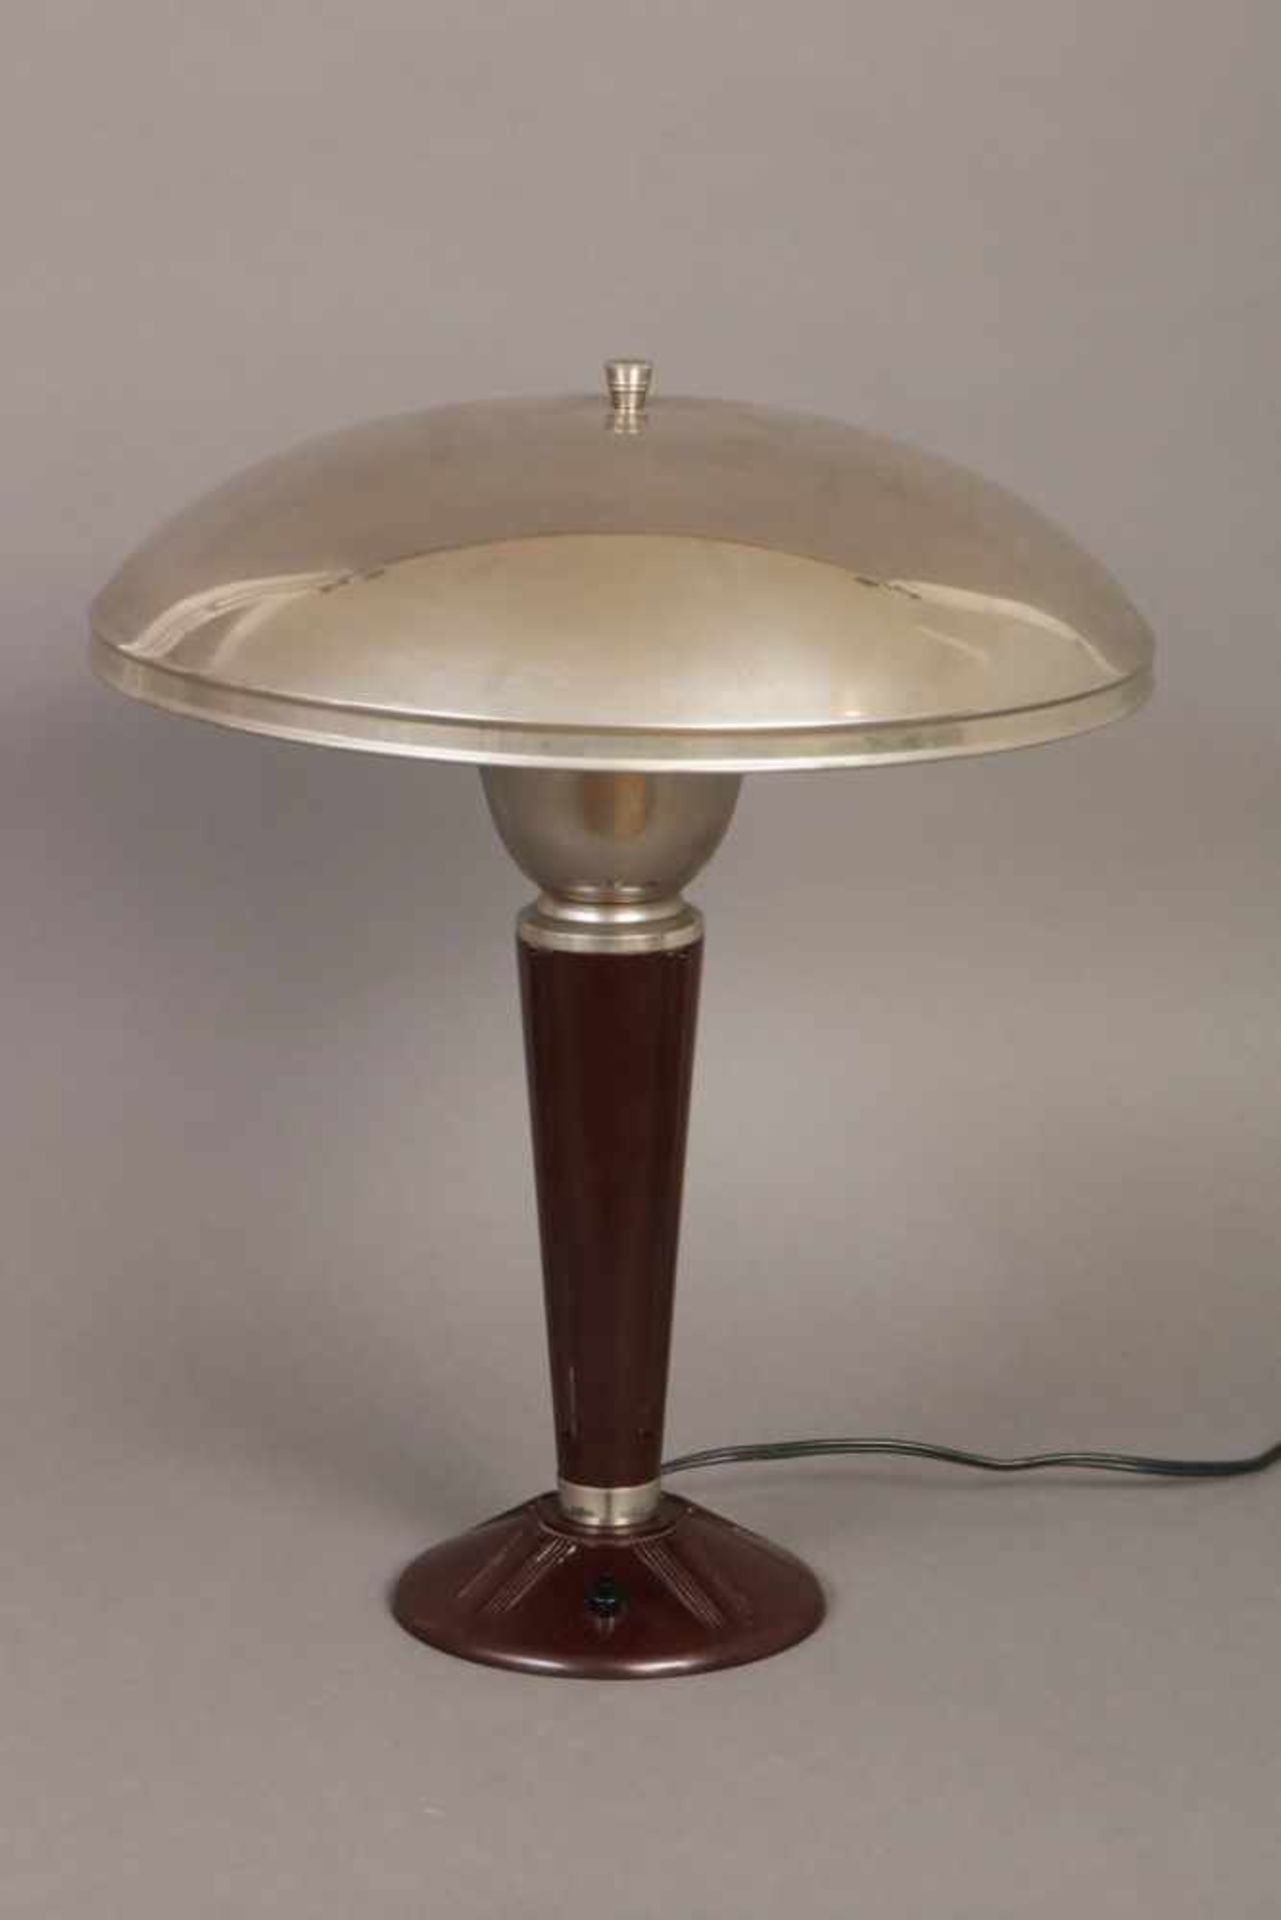 Tisch-/Schreibtischlampe im Stile des Art Deco um 1930, pilzförmig mit verchromtem Kuppelschirm